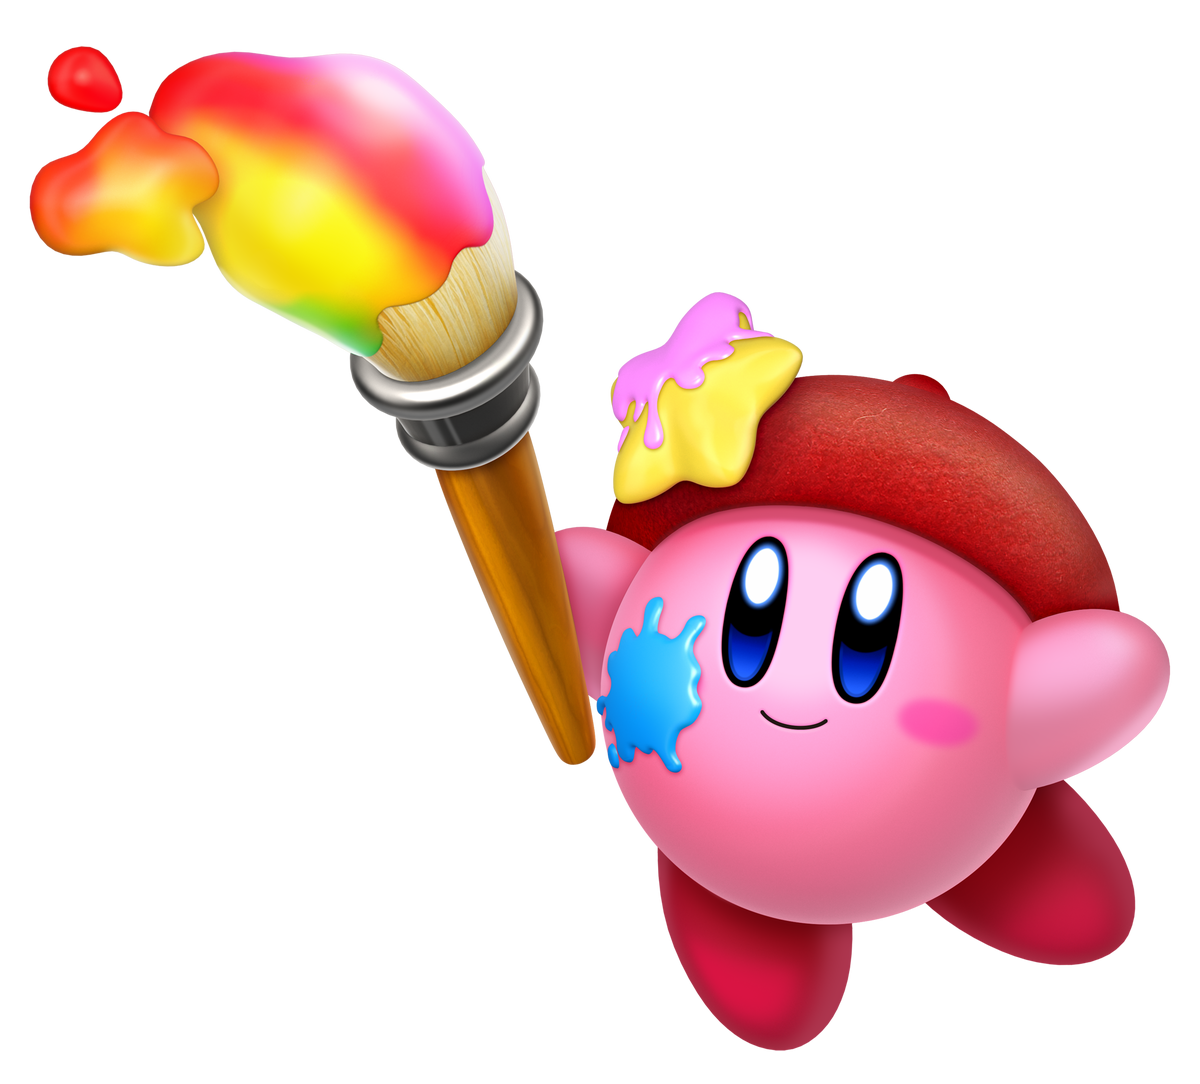 Kirby Star Allies - WiKirby: it's a wiki, about Kirby!